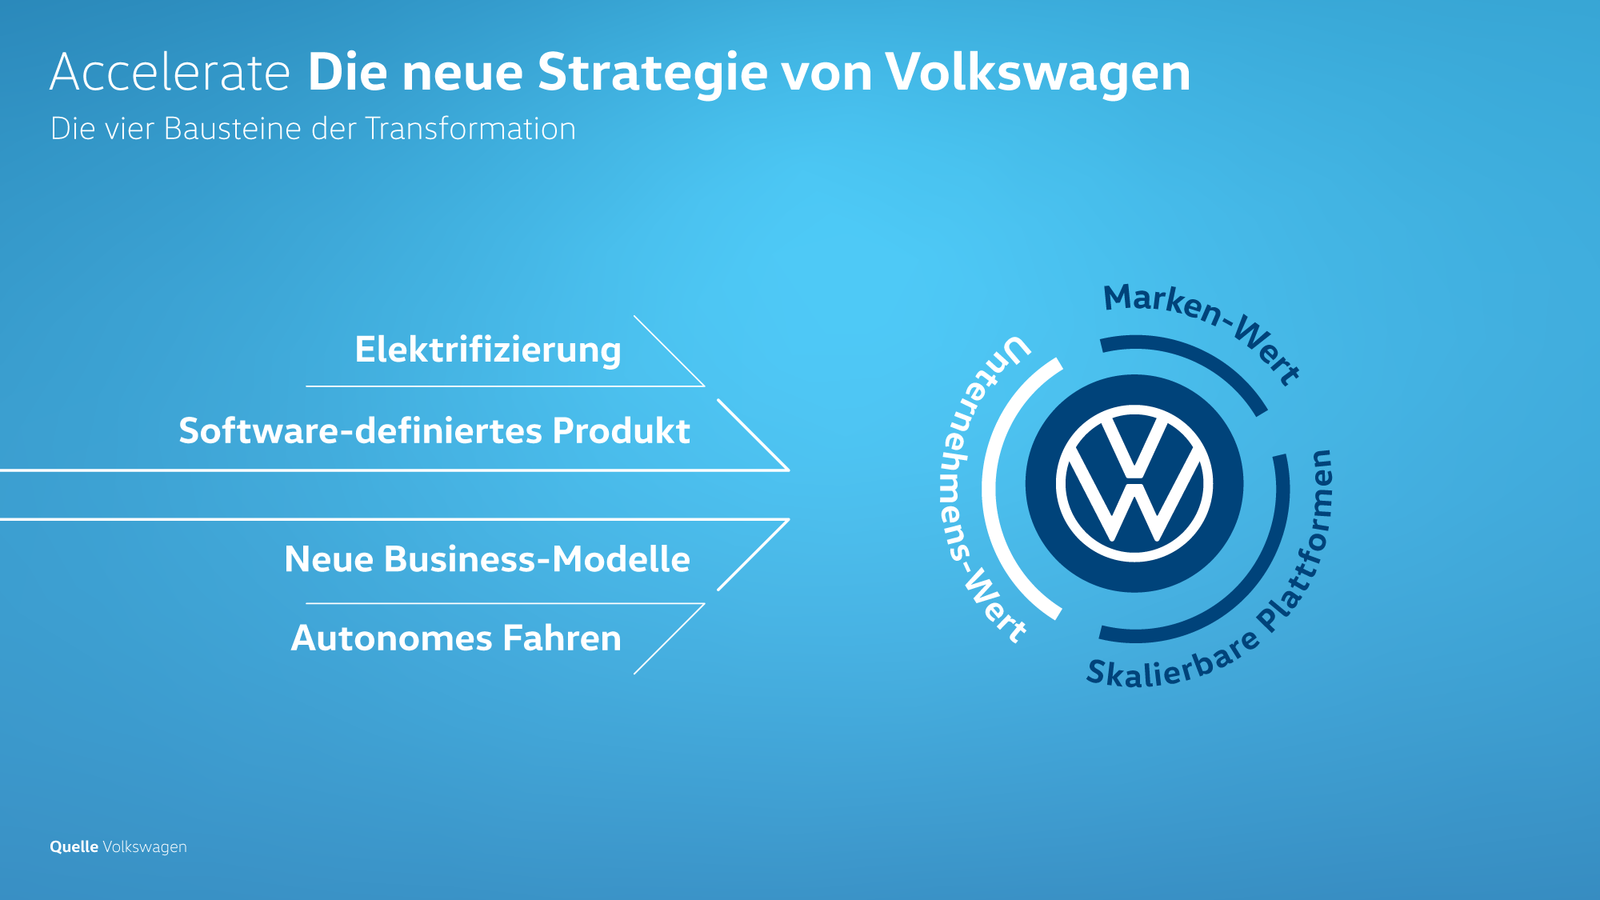 Accelerate Die neue Strategie von Volkswagen